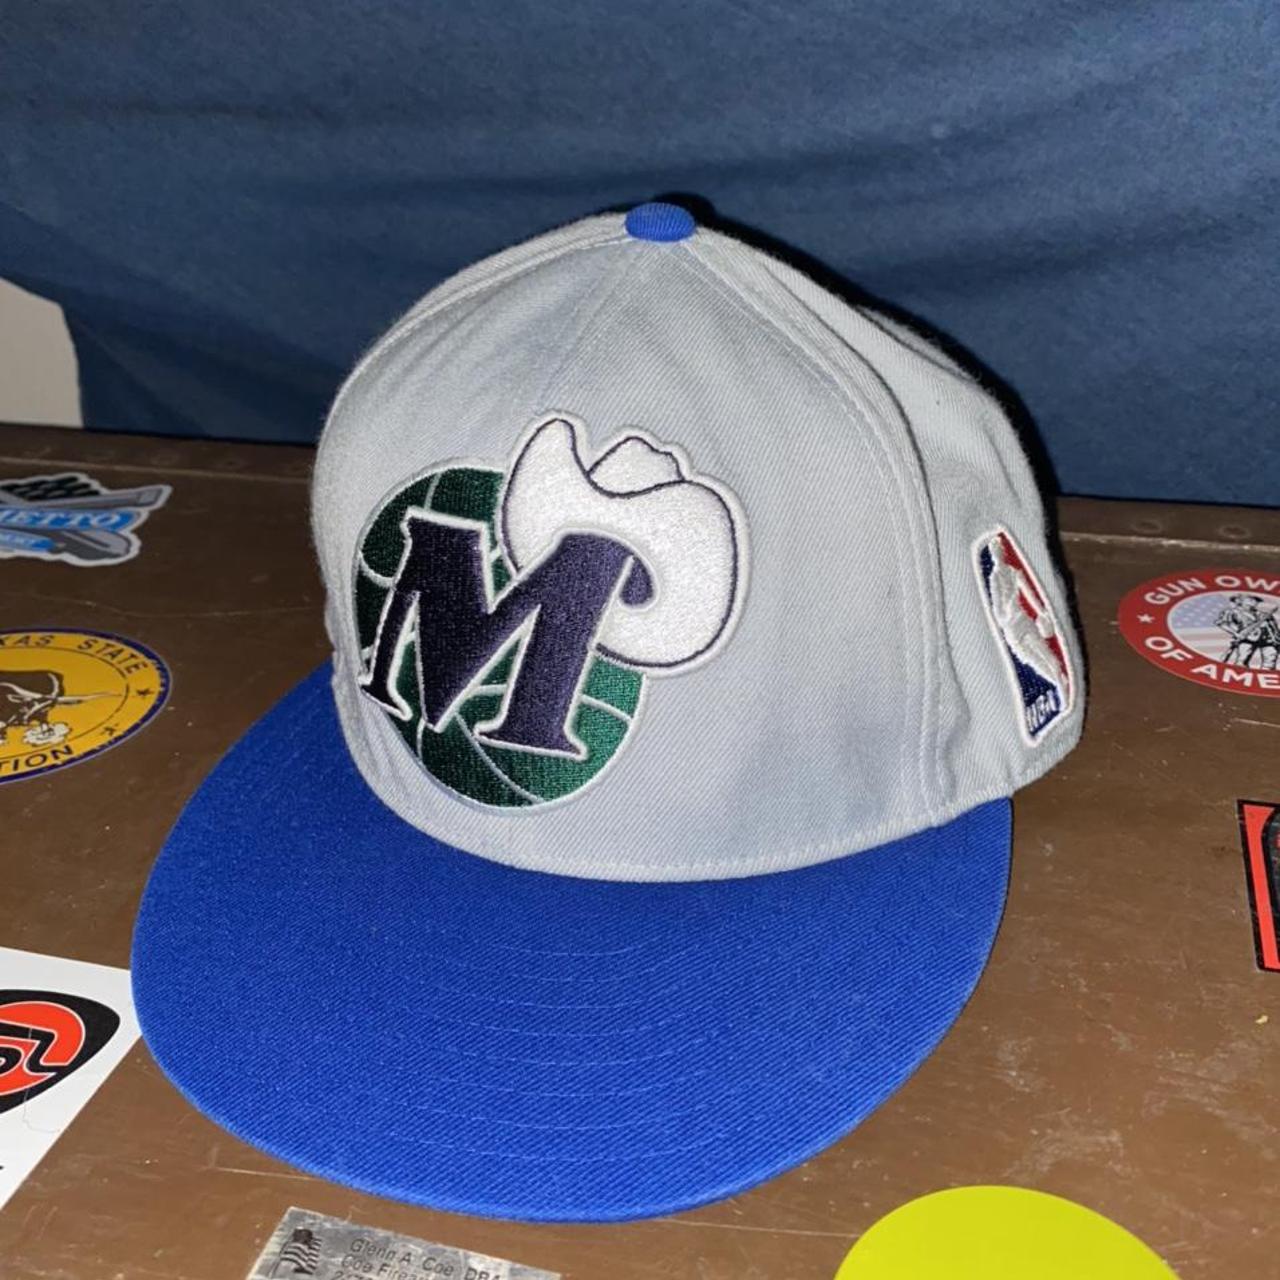 dallas mavericks vintage hat